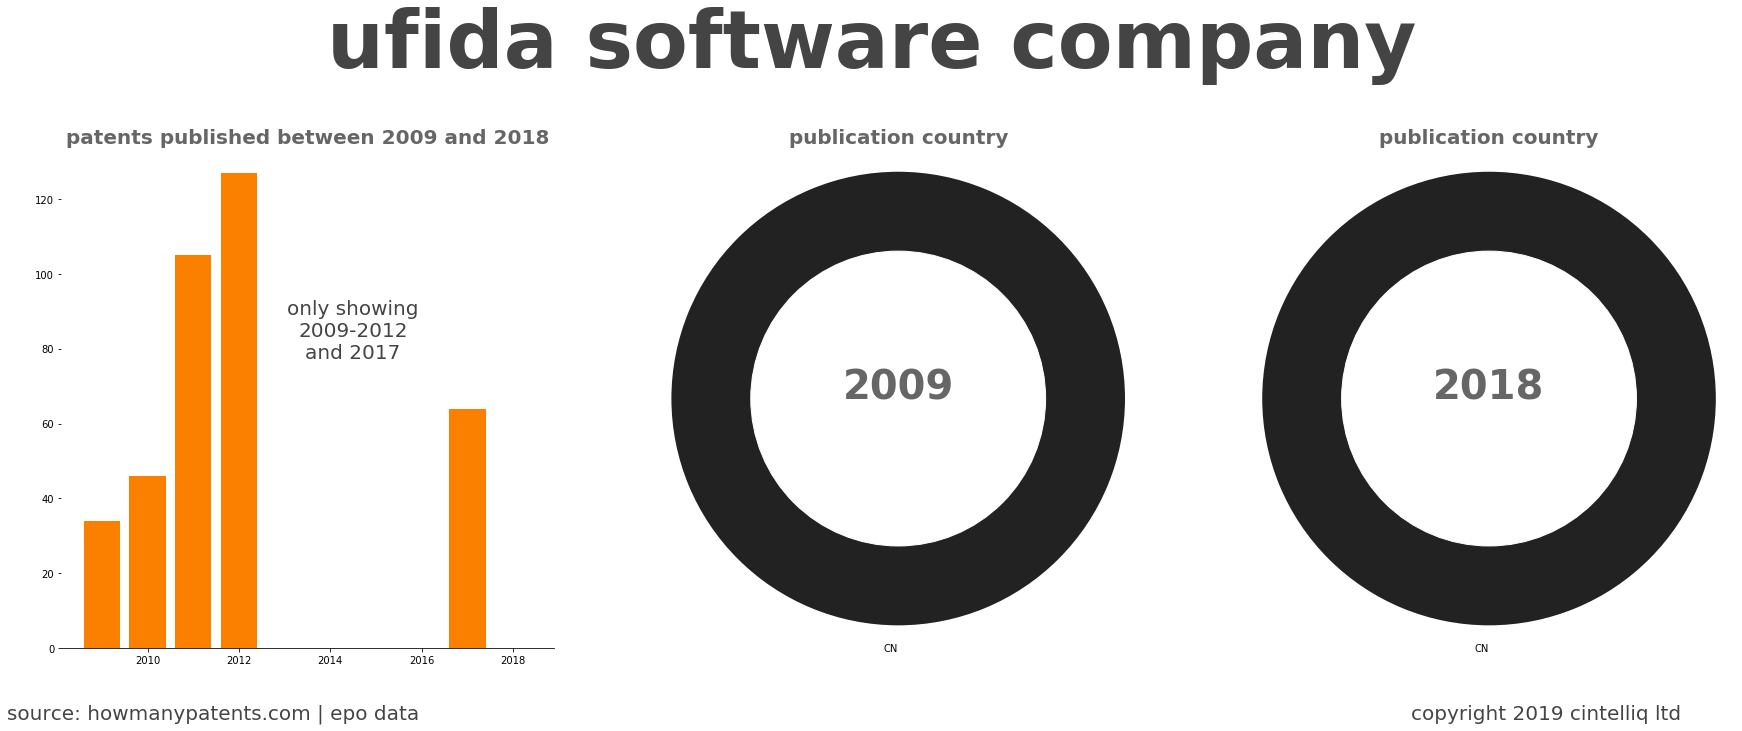 summary of patents for Ufida Software Company